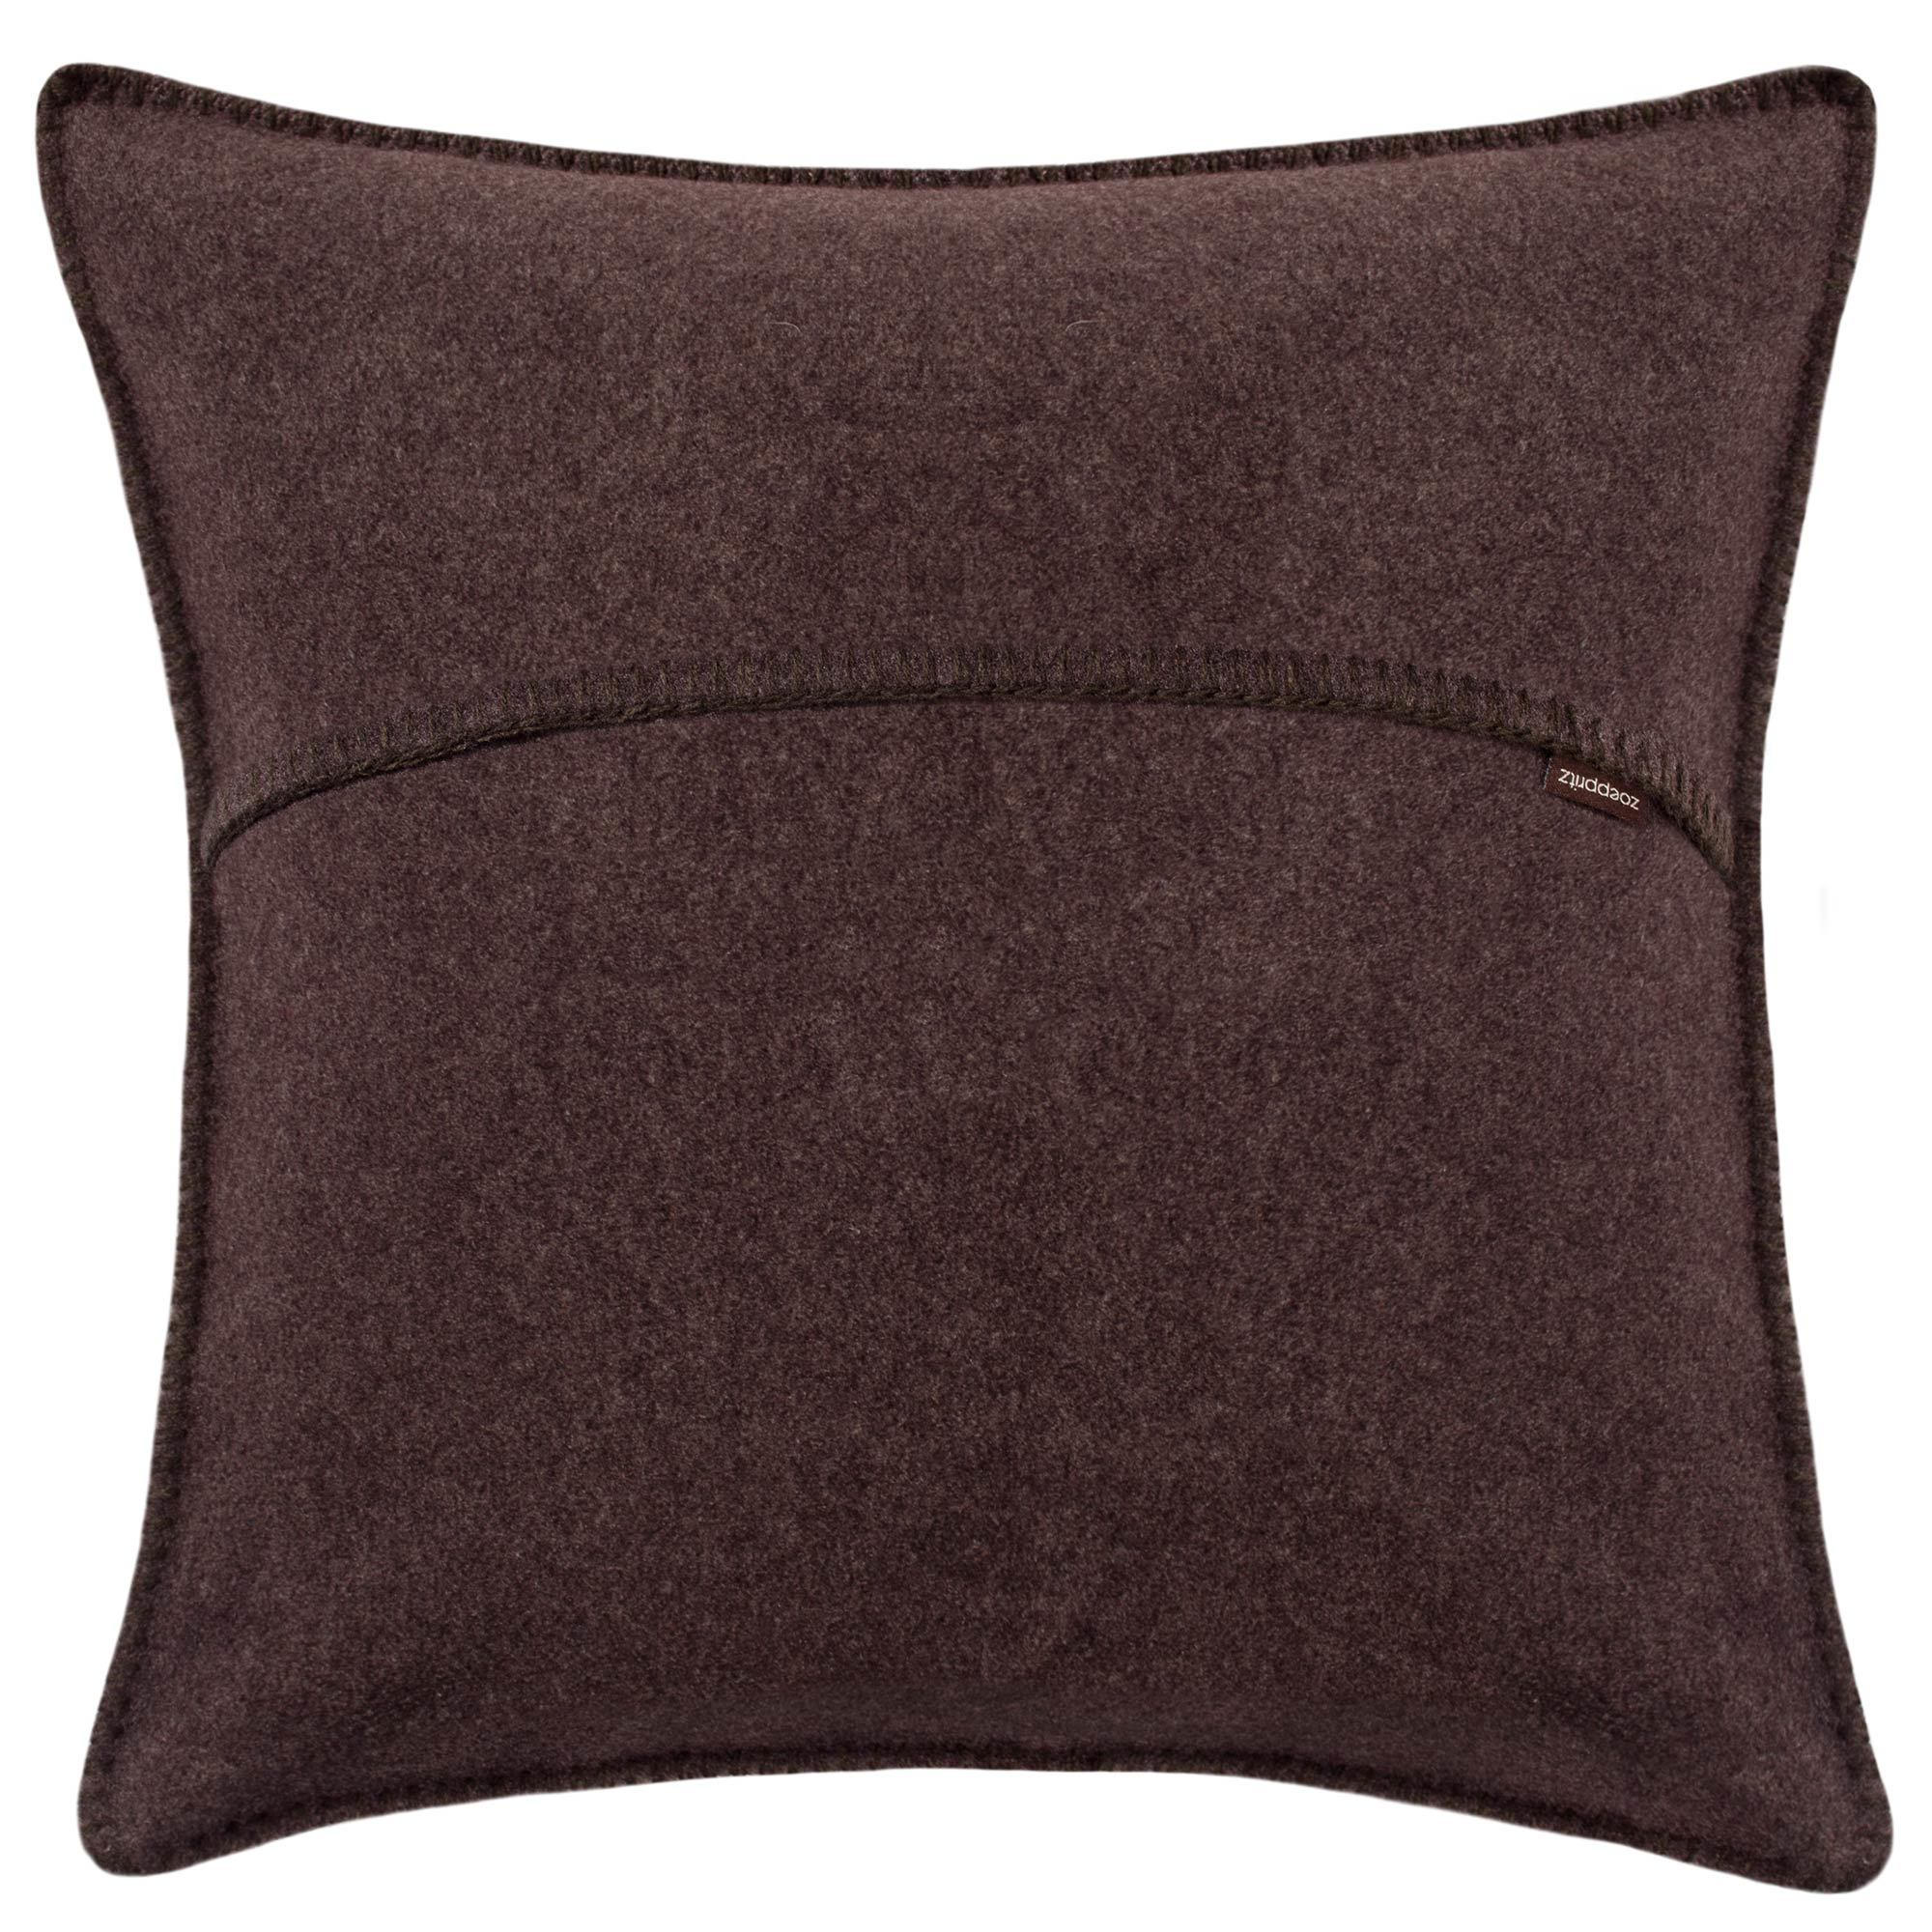 KISSENHÜLLE Soft-Fleece 50/50 cm  - Dunkelbraun, Basics, Textil (50/50cm) - Zoeppritz